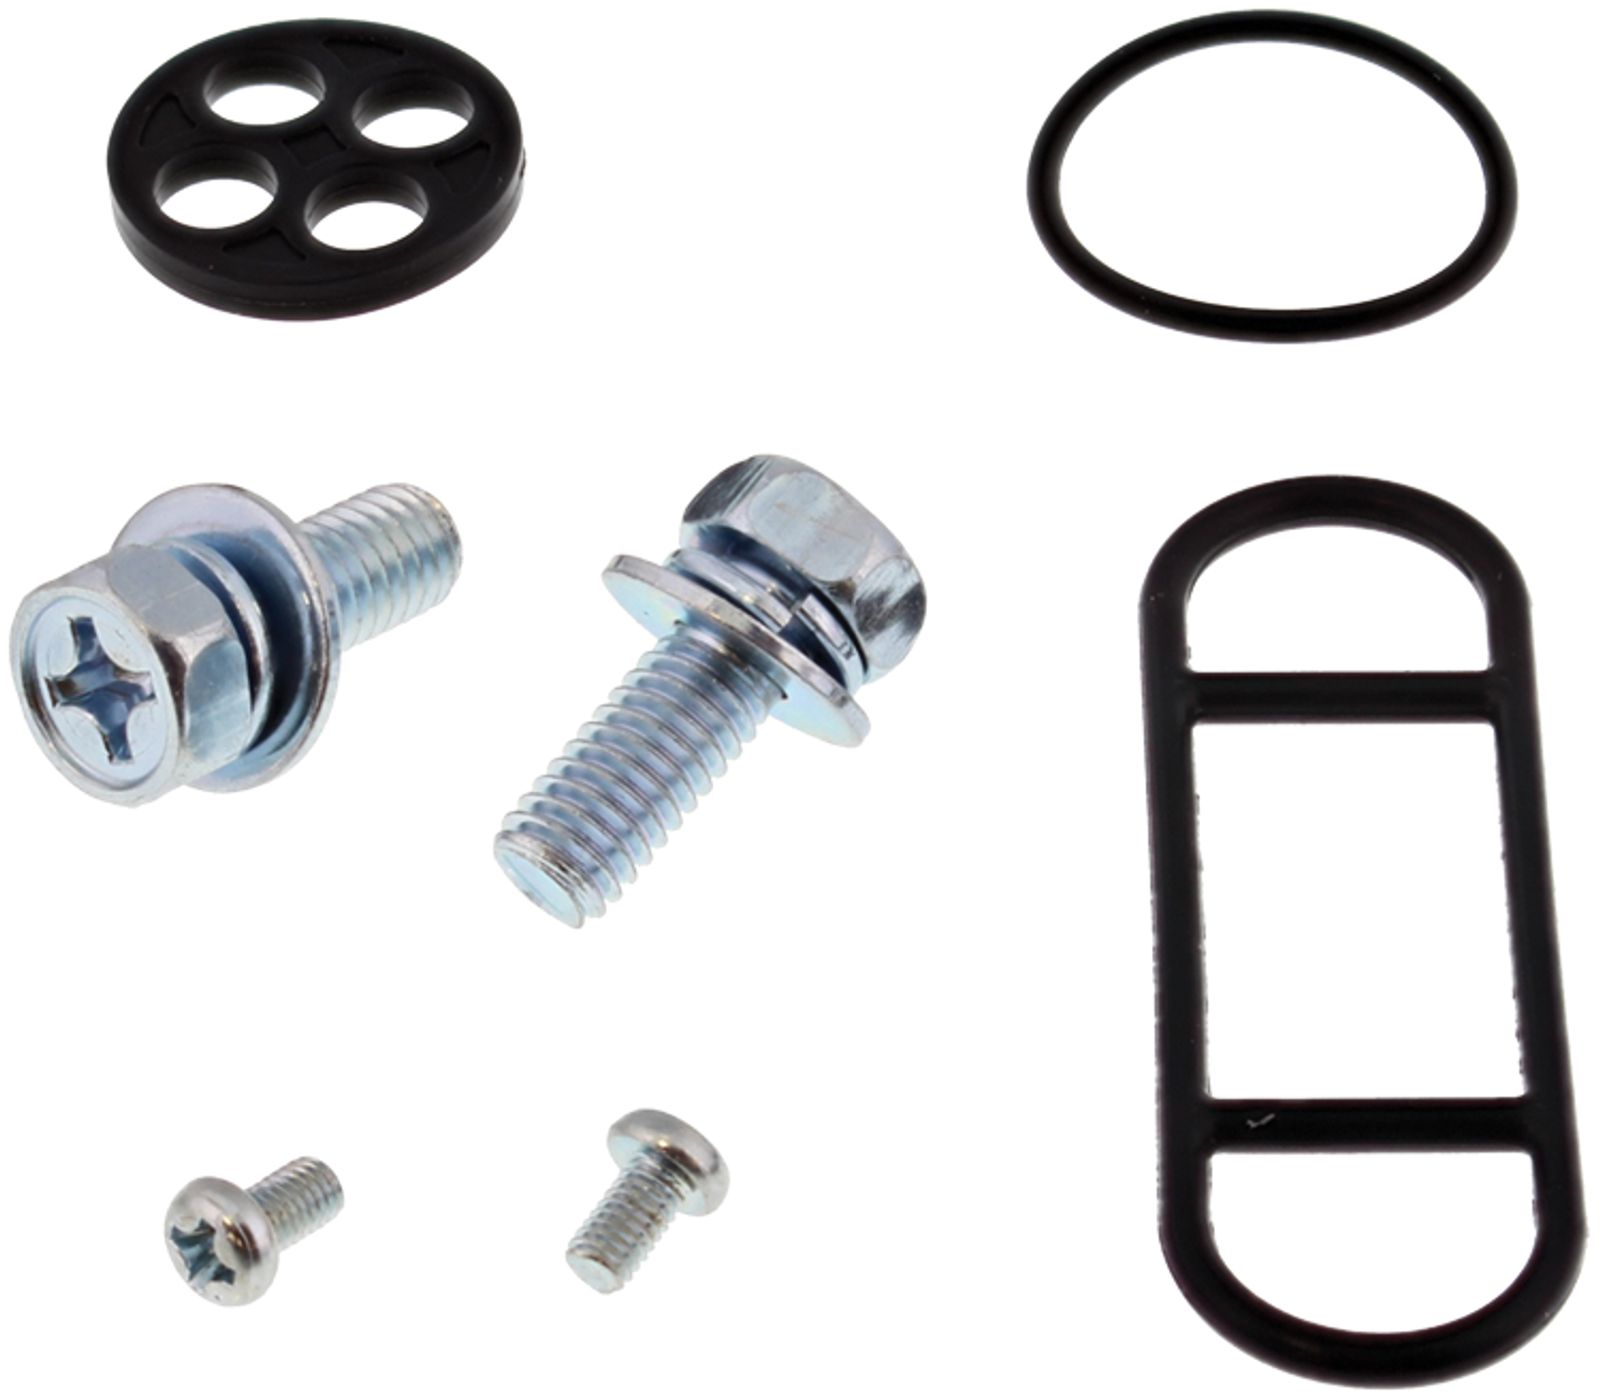 Wrp Fuel Tap Repair Kits - WRP601089 image